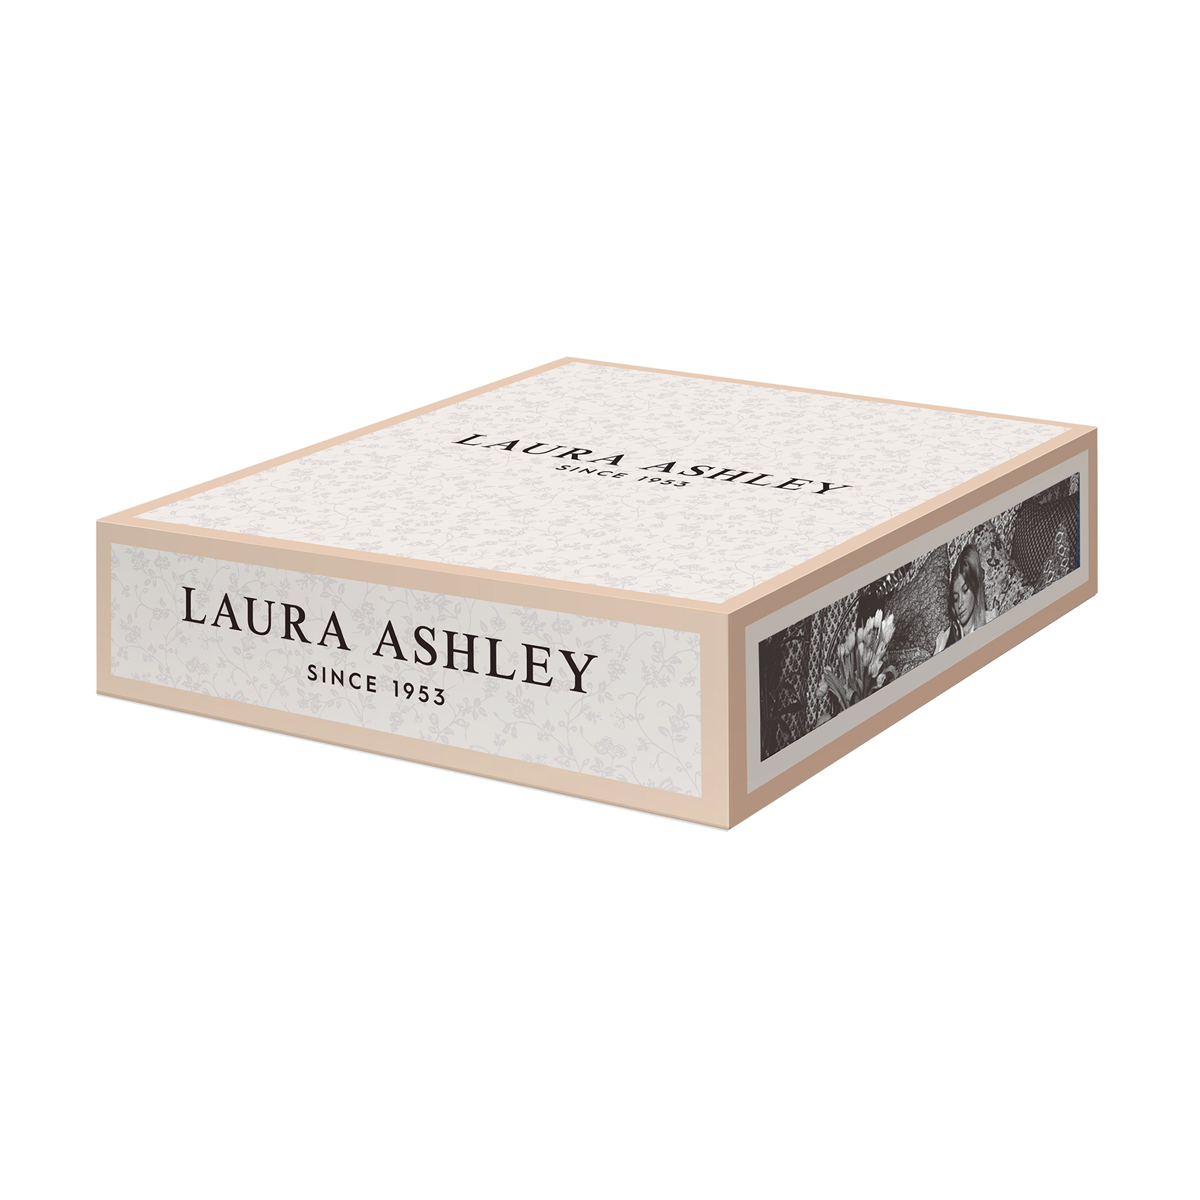 Πιάτα Σετ 4 Τεμ. Πορσελάνης 20cm Assorted – Giftbox – Βlueprint Laura Ashley LA182694 - 2